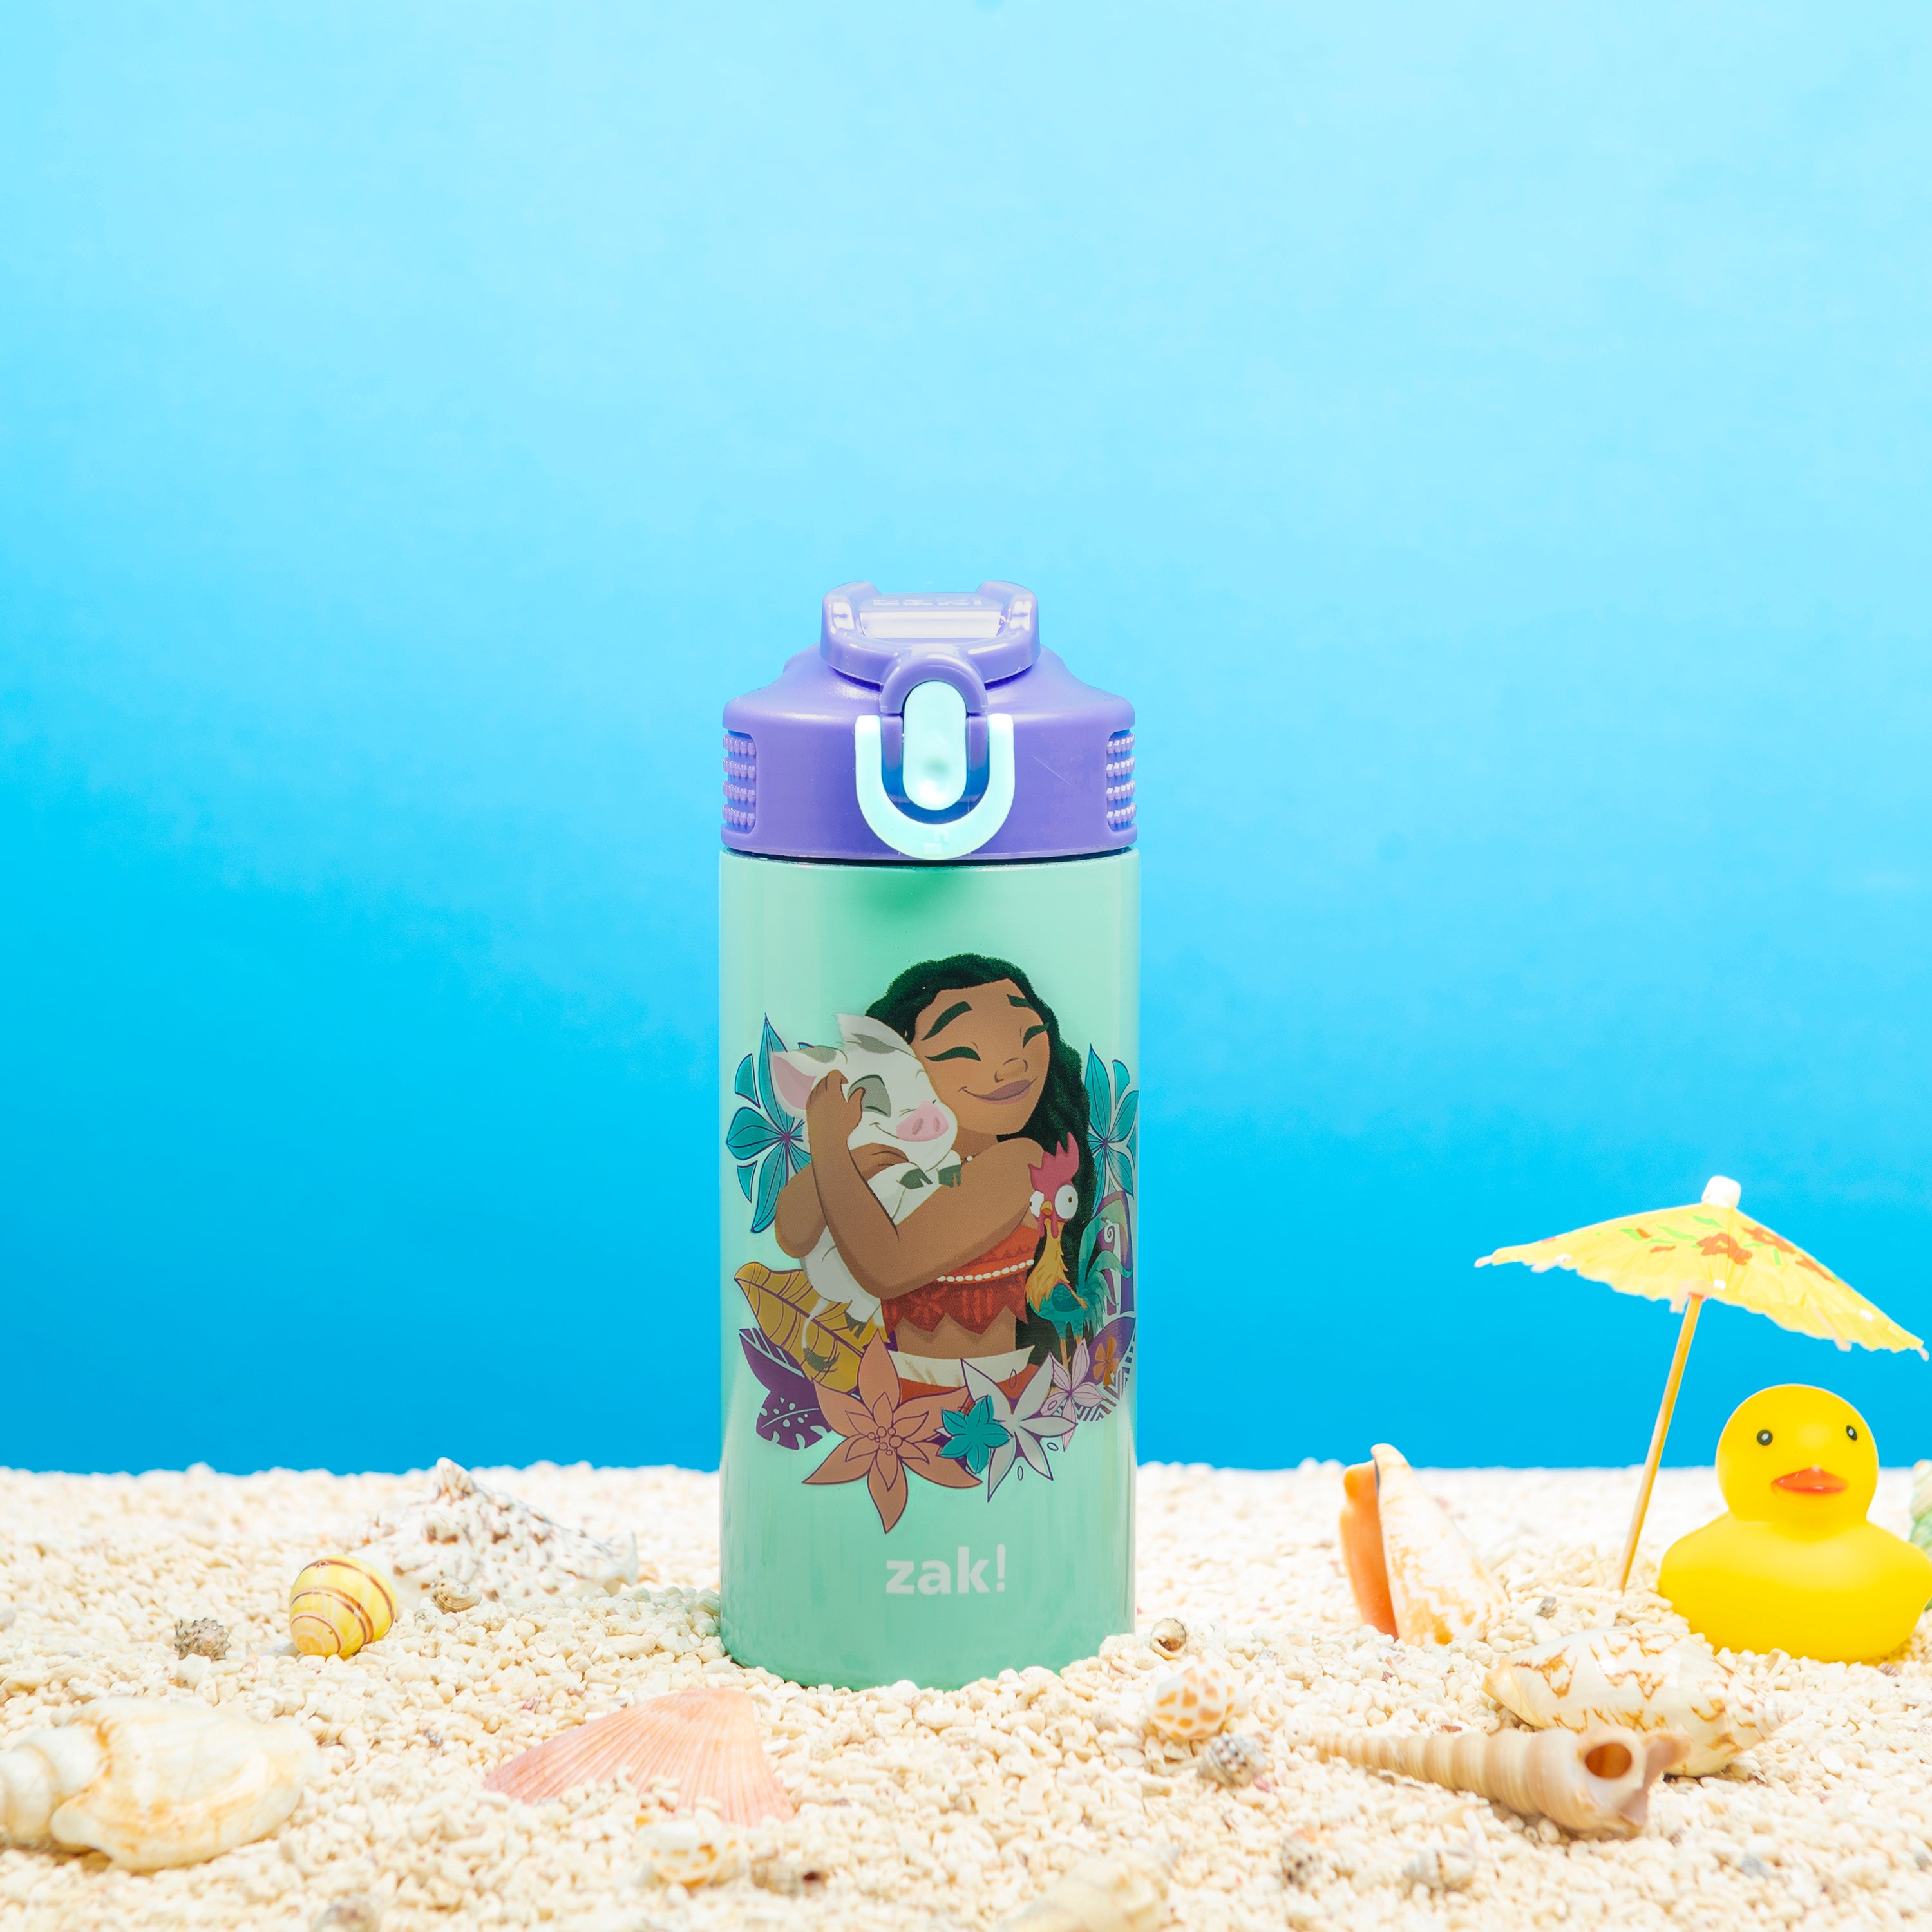 Disney Store Moana Water Bottle